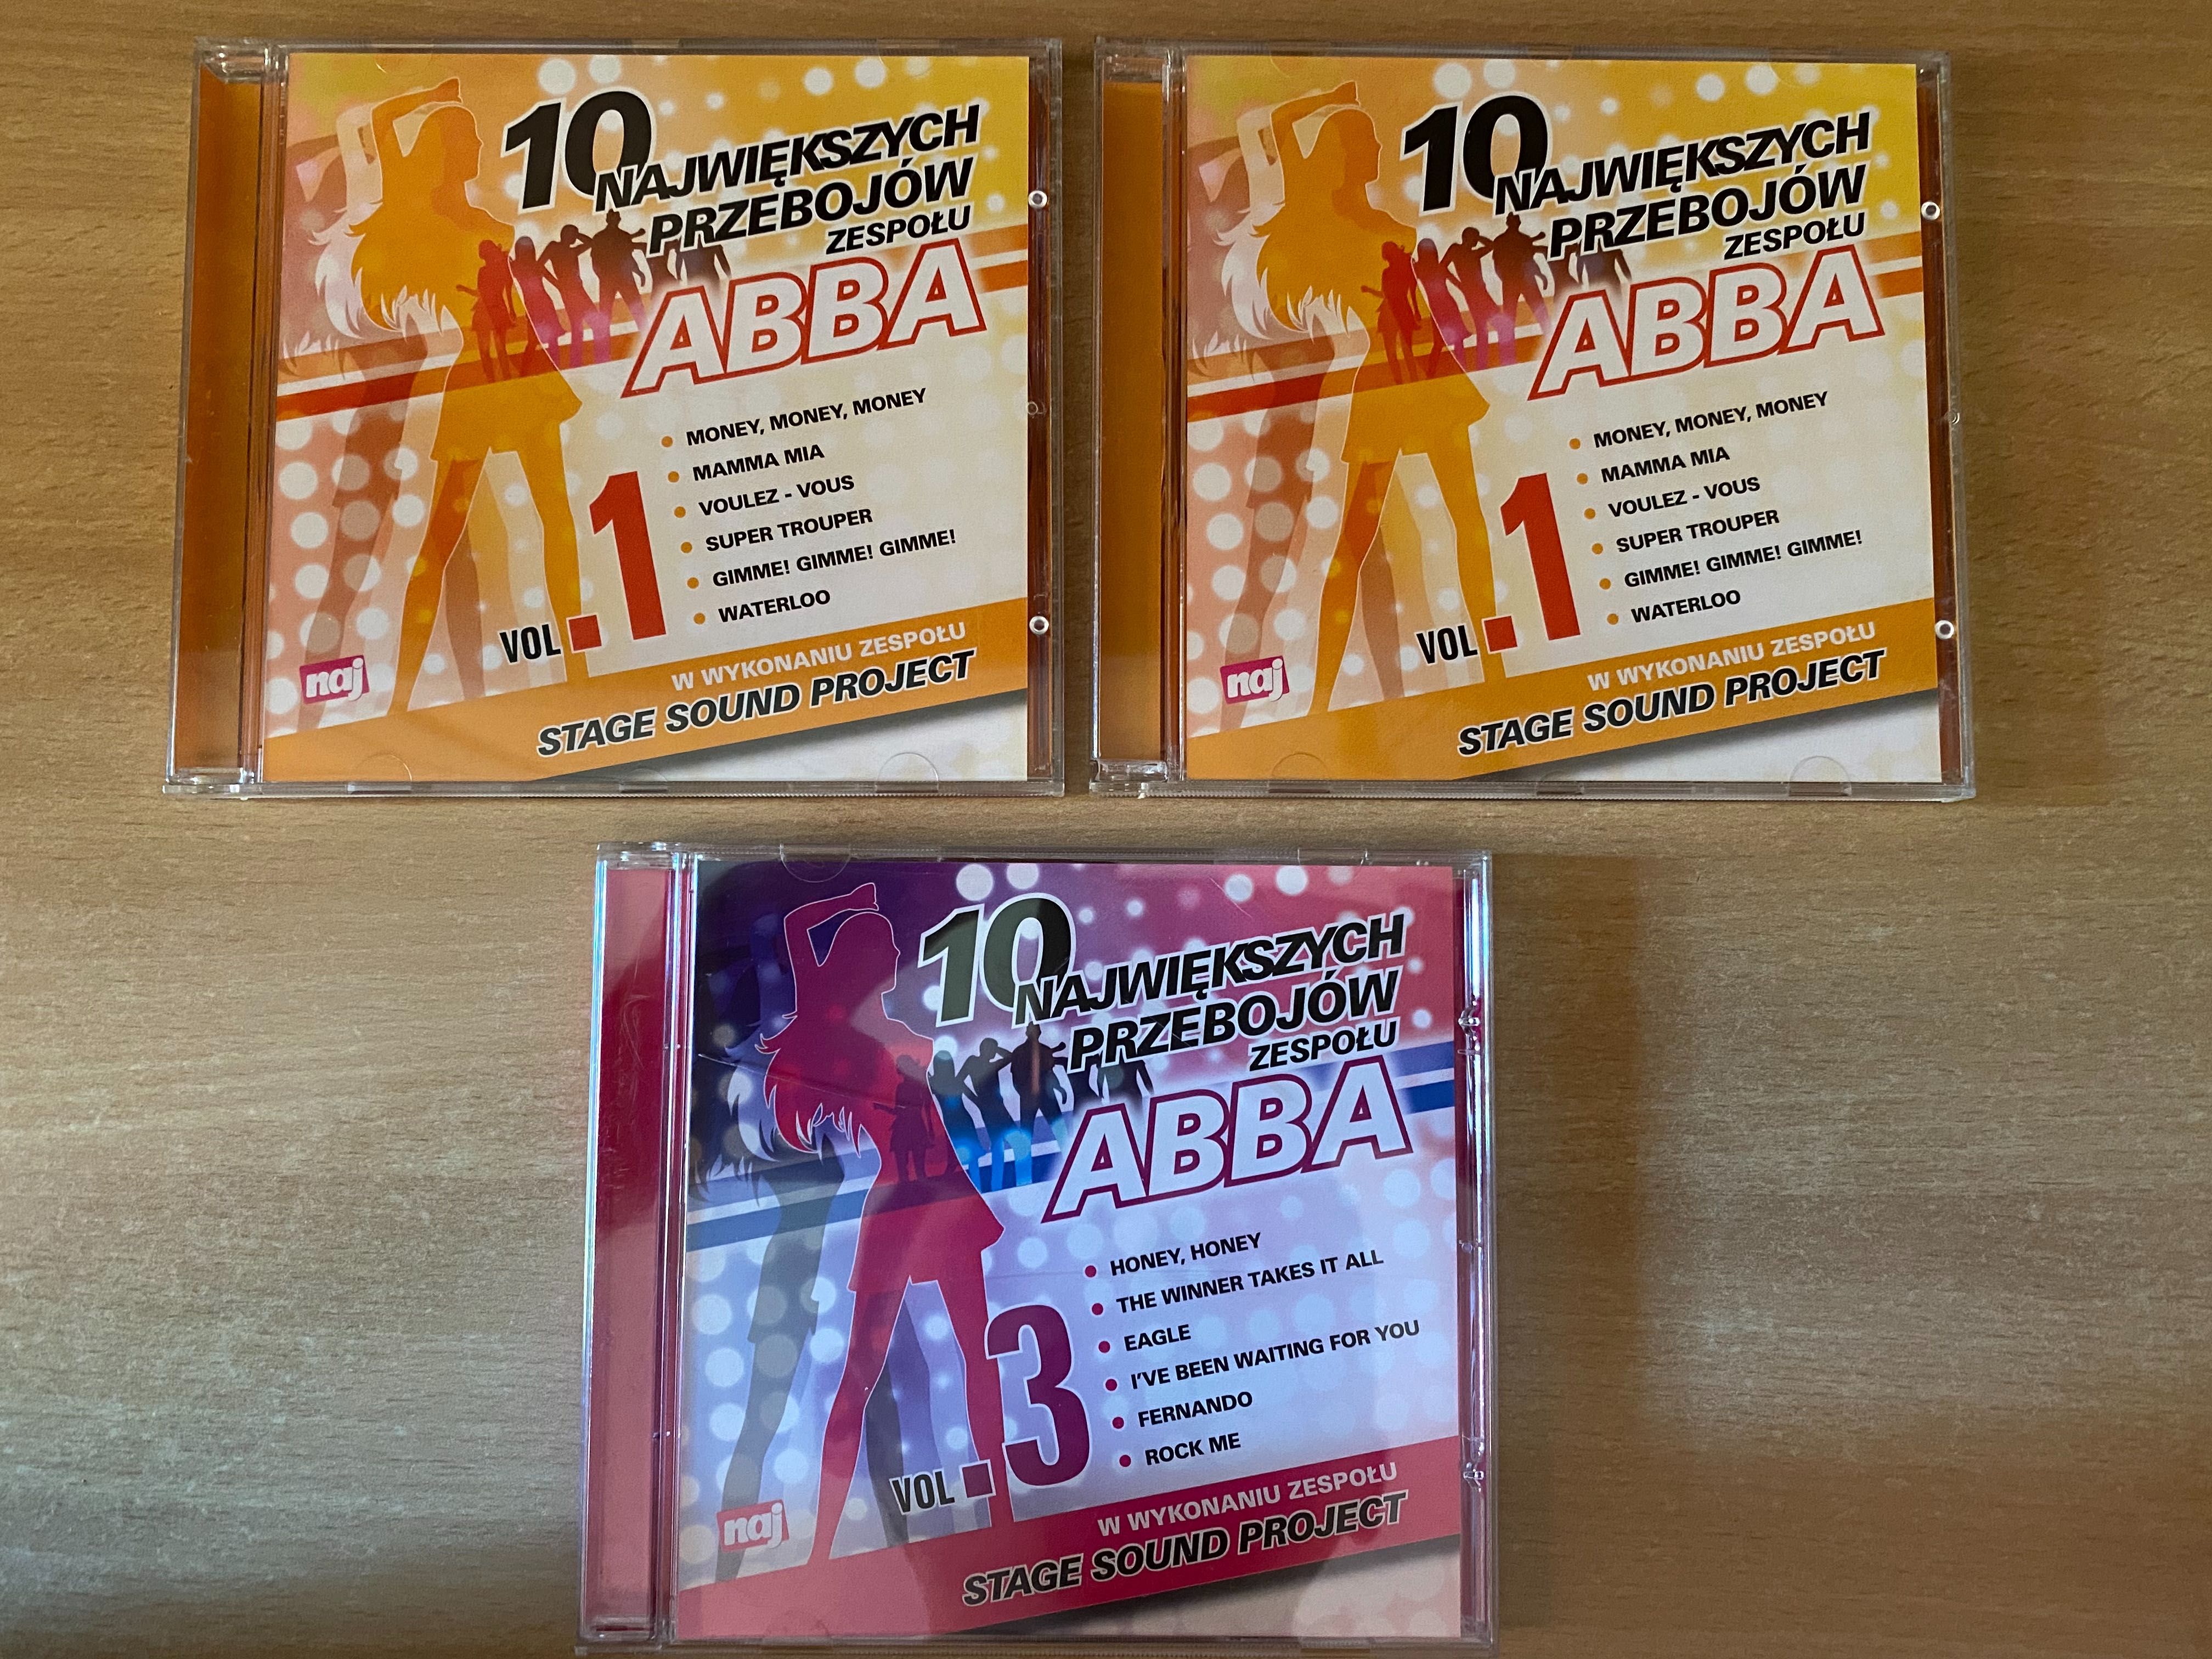 ABBA 10 największych przebojów vol. 1 vol. 3 kolekcja gazety NAJ